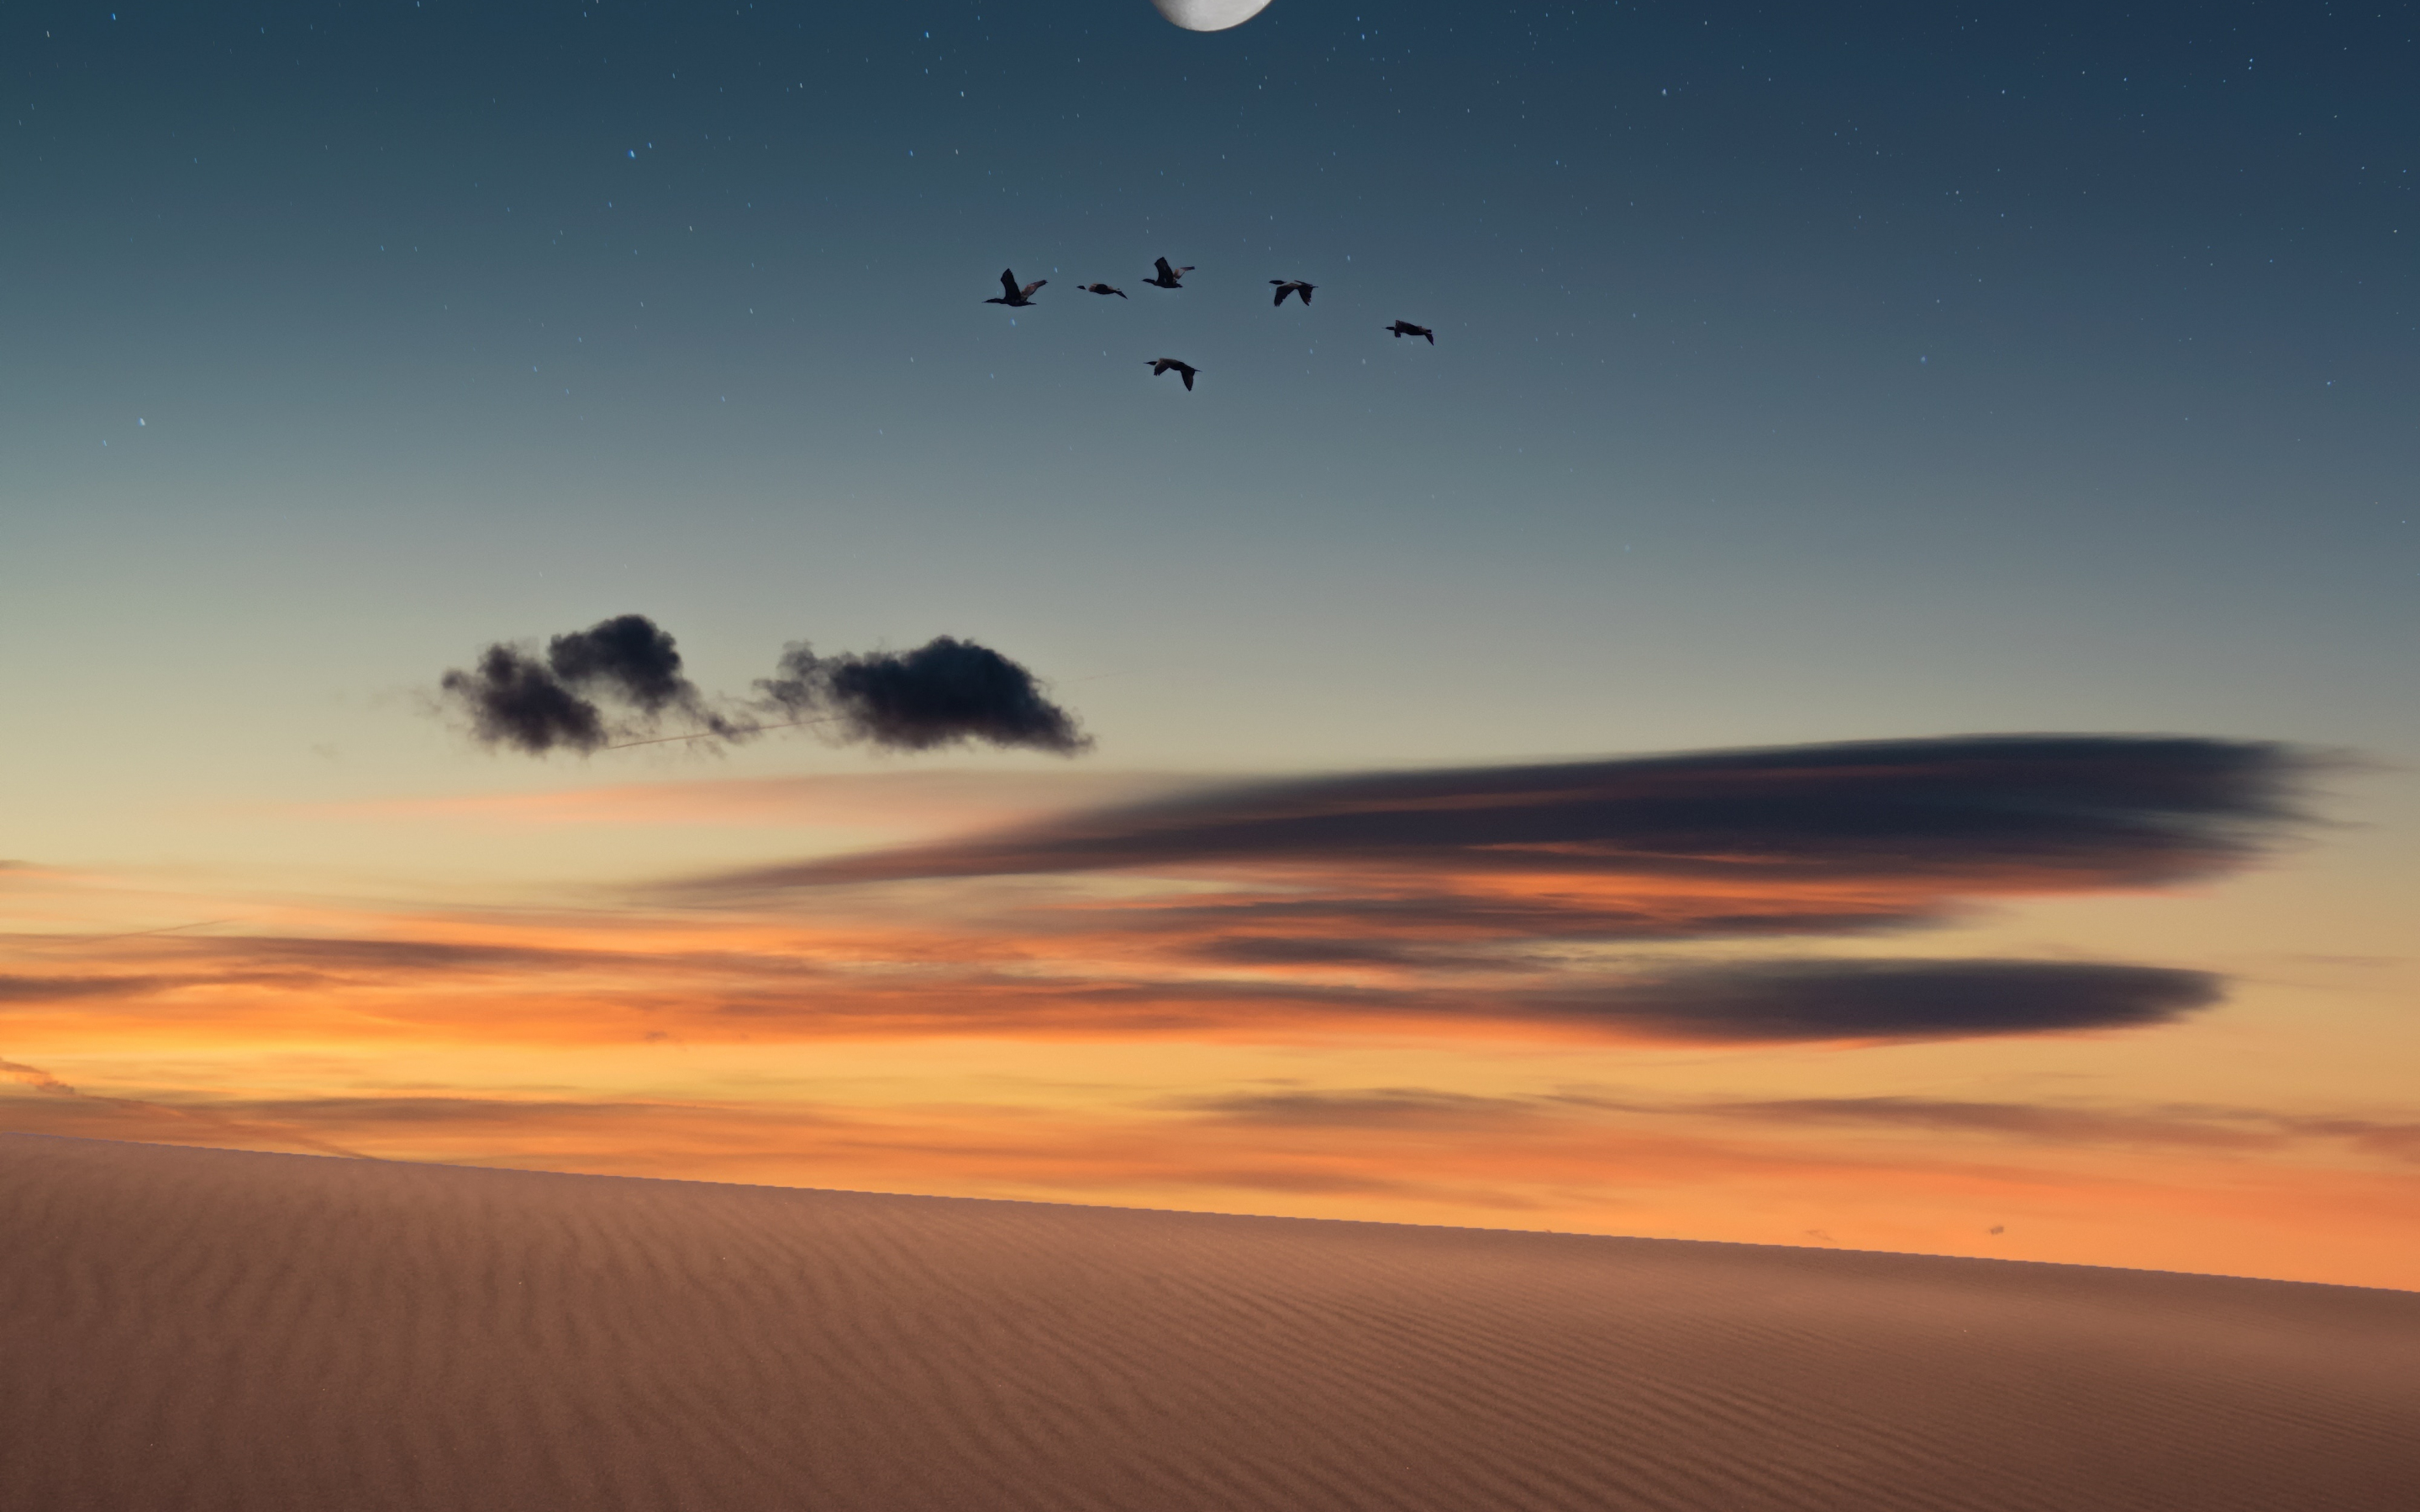 Full moon, birds, landscape, desert, 2880x1800 wallpaper